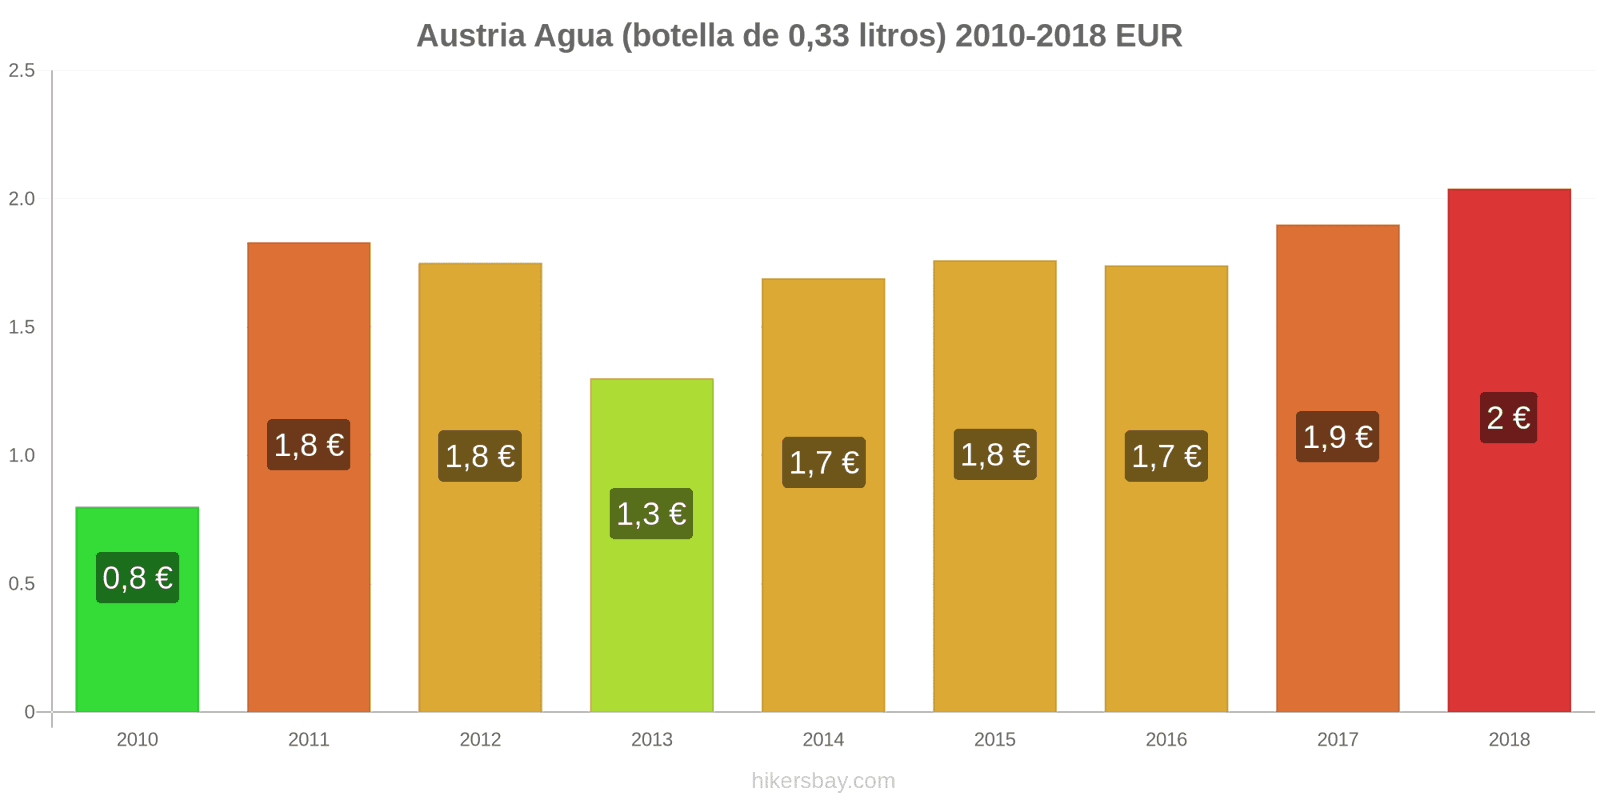 Austria cambios de precios Agua (botella de 0.33 litros) hikersbay.com